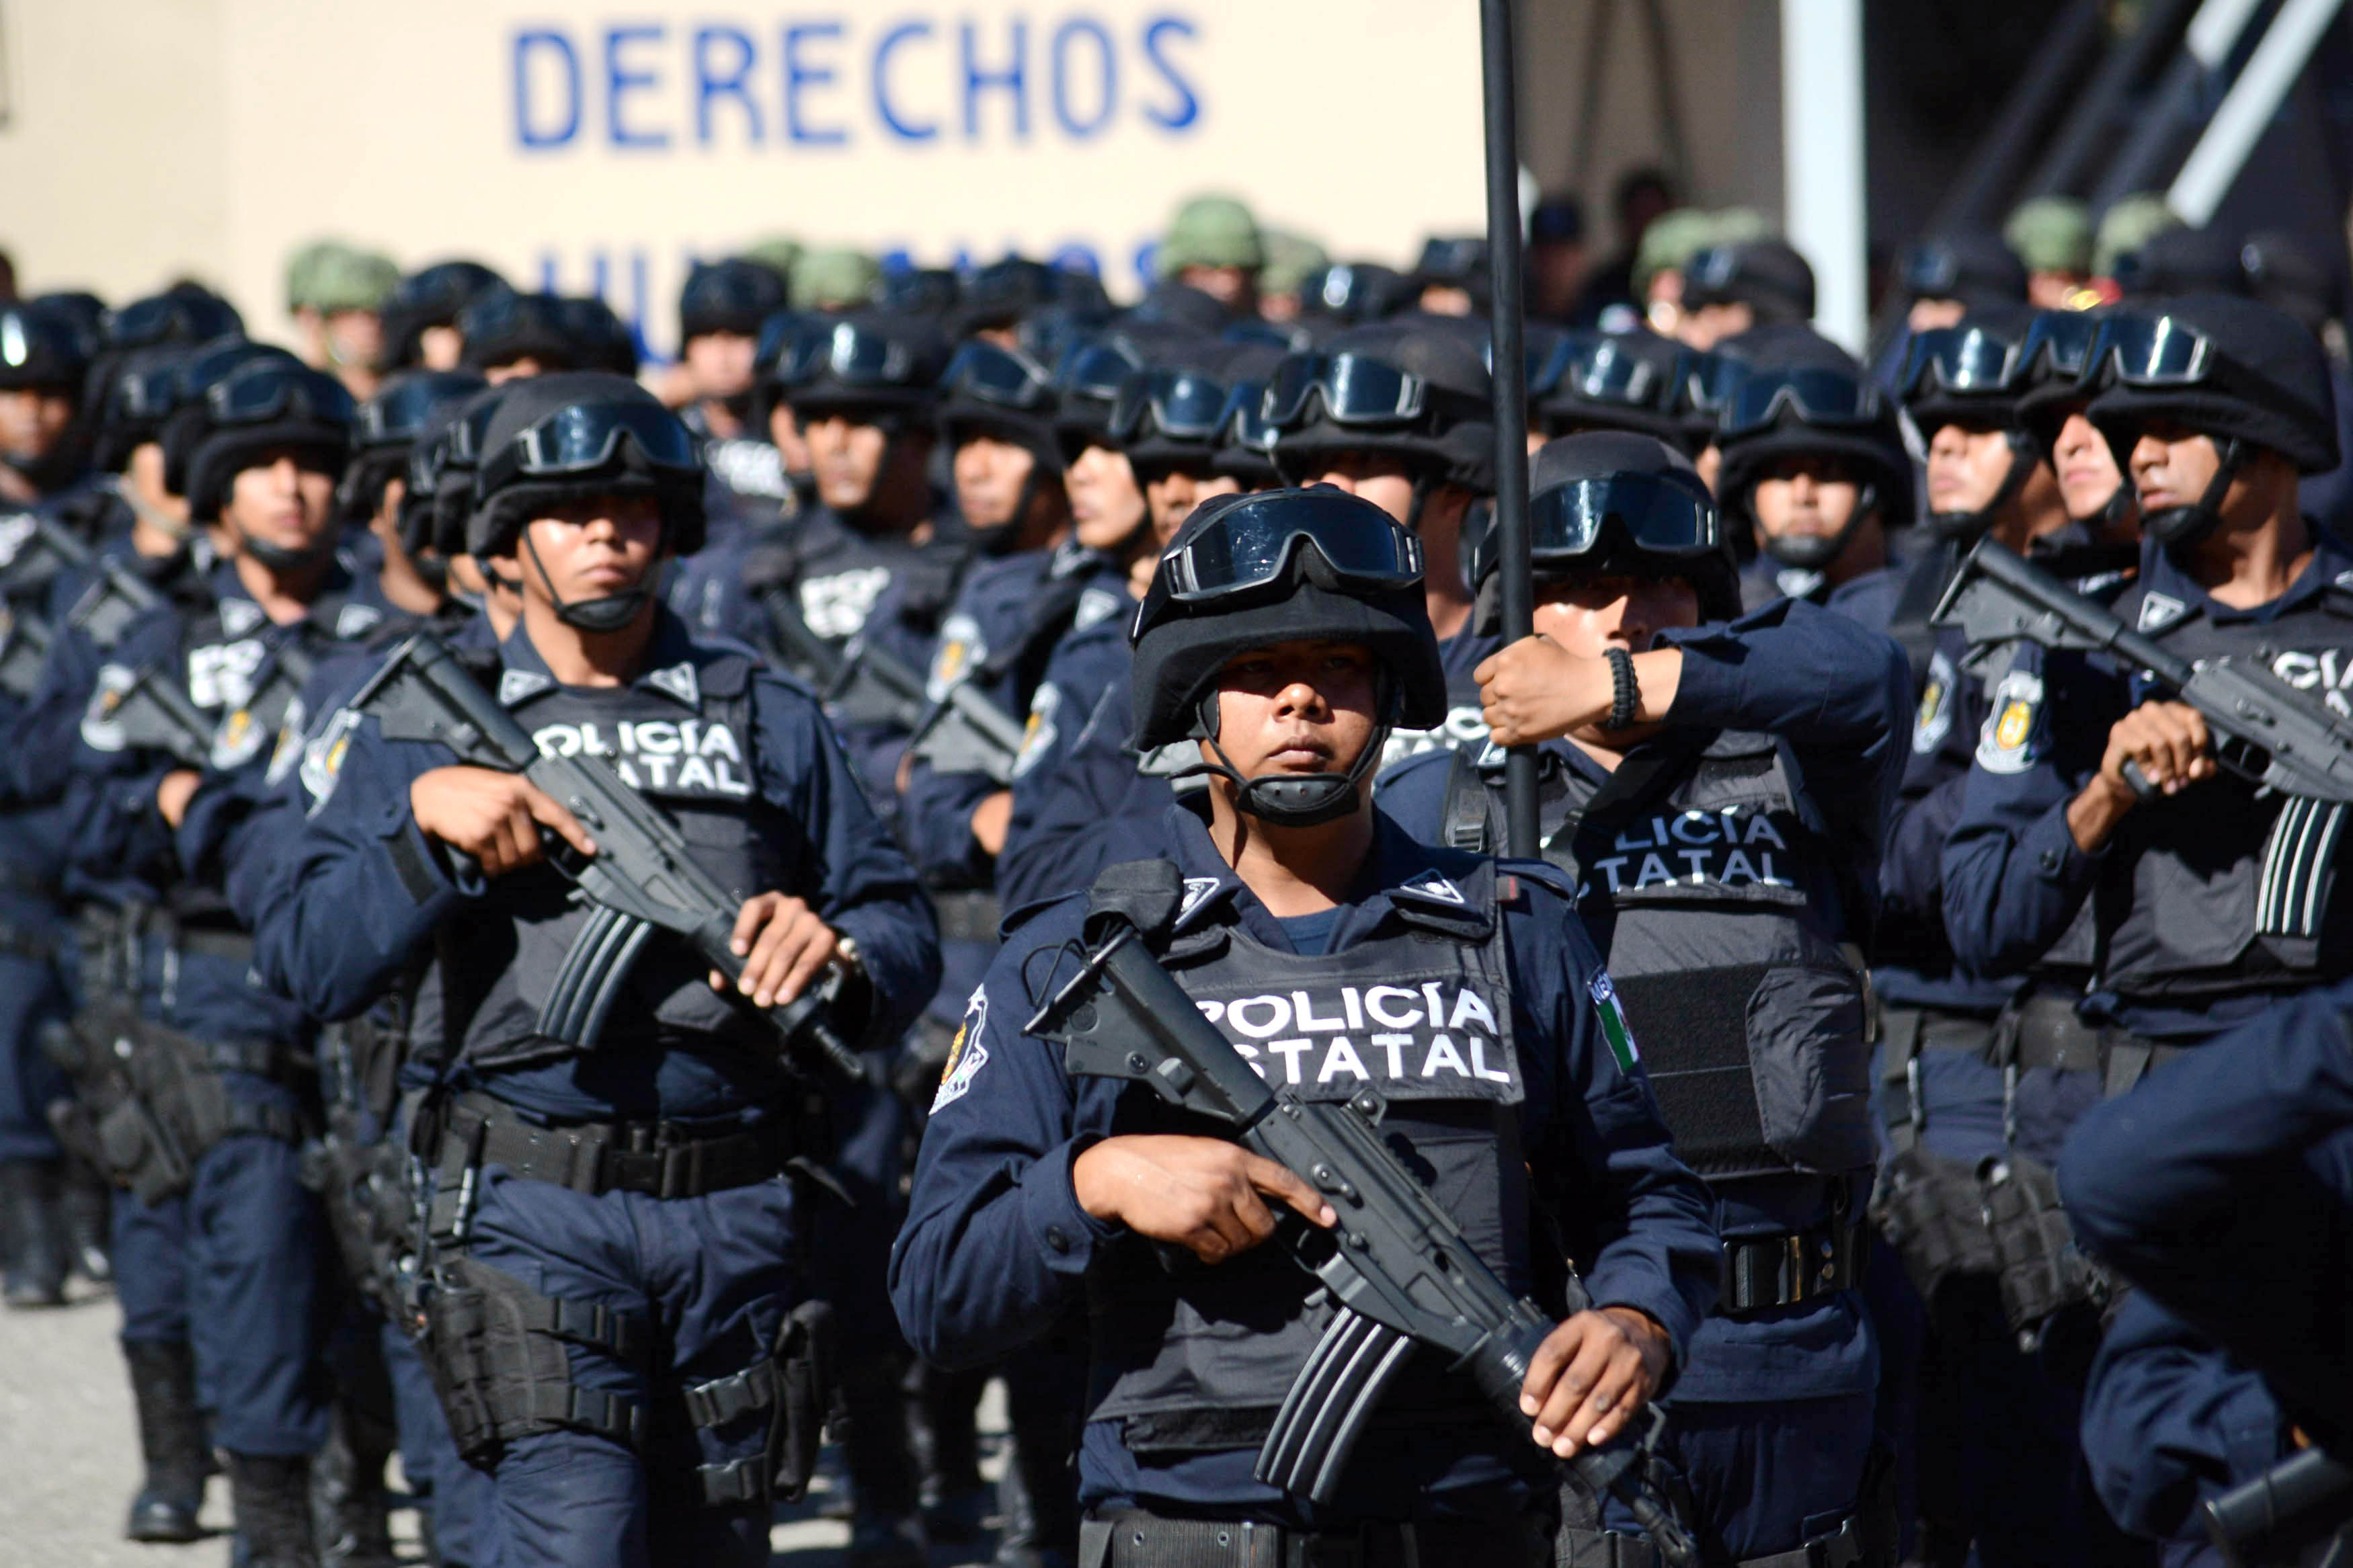  Fuerza estatal de Guerrero asume la seguridad de Tierra Colorada